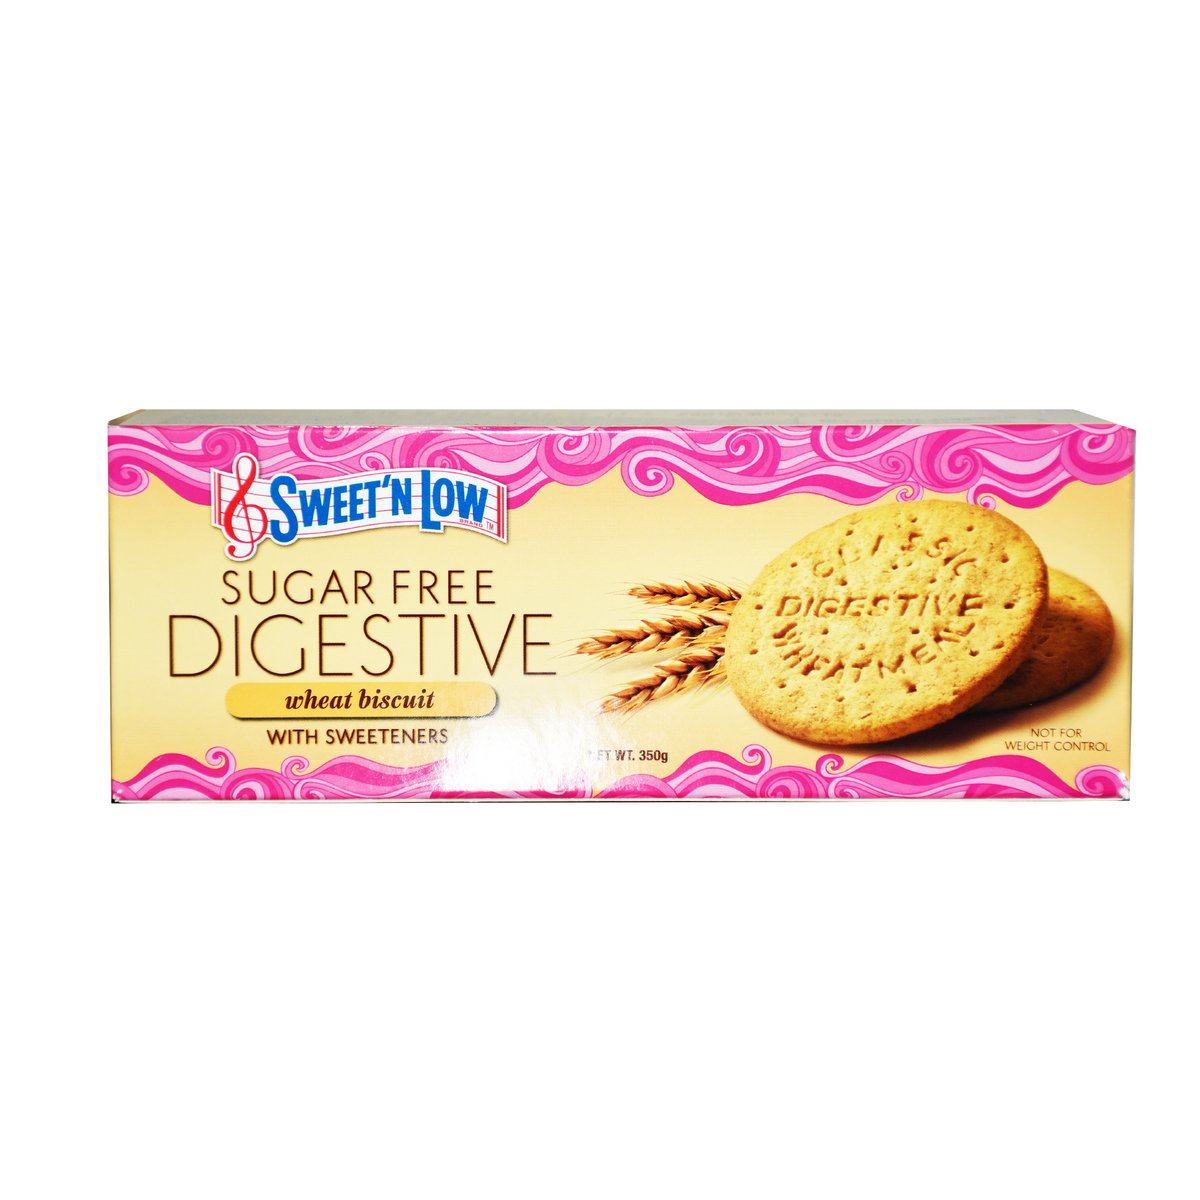 Sweet N Low Sugar Free Digestive Wheat Biscuit 350g